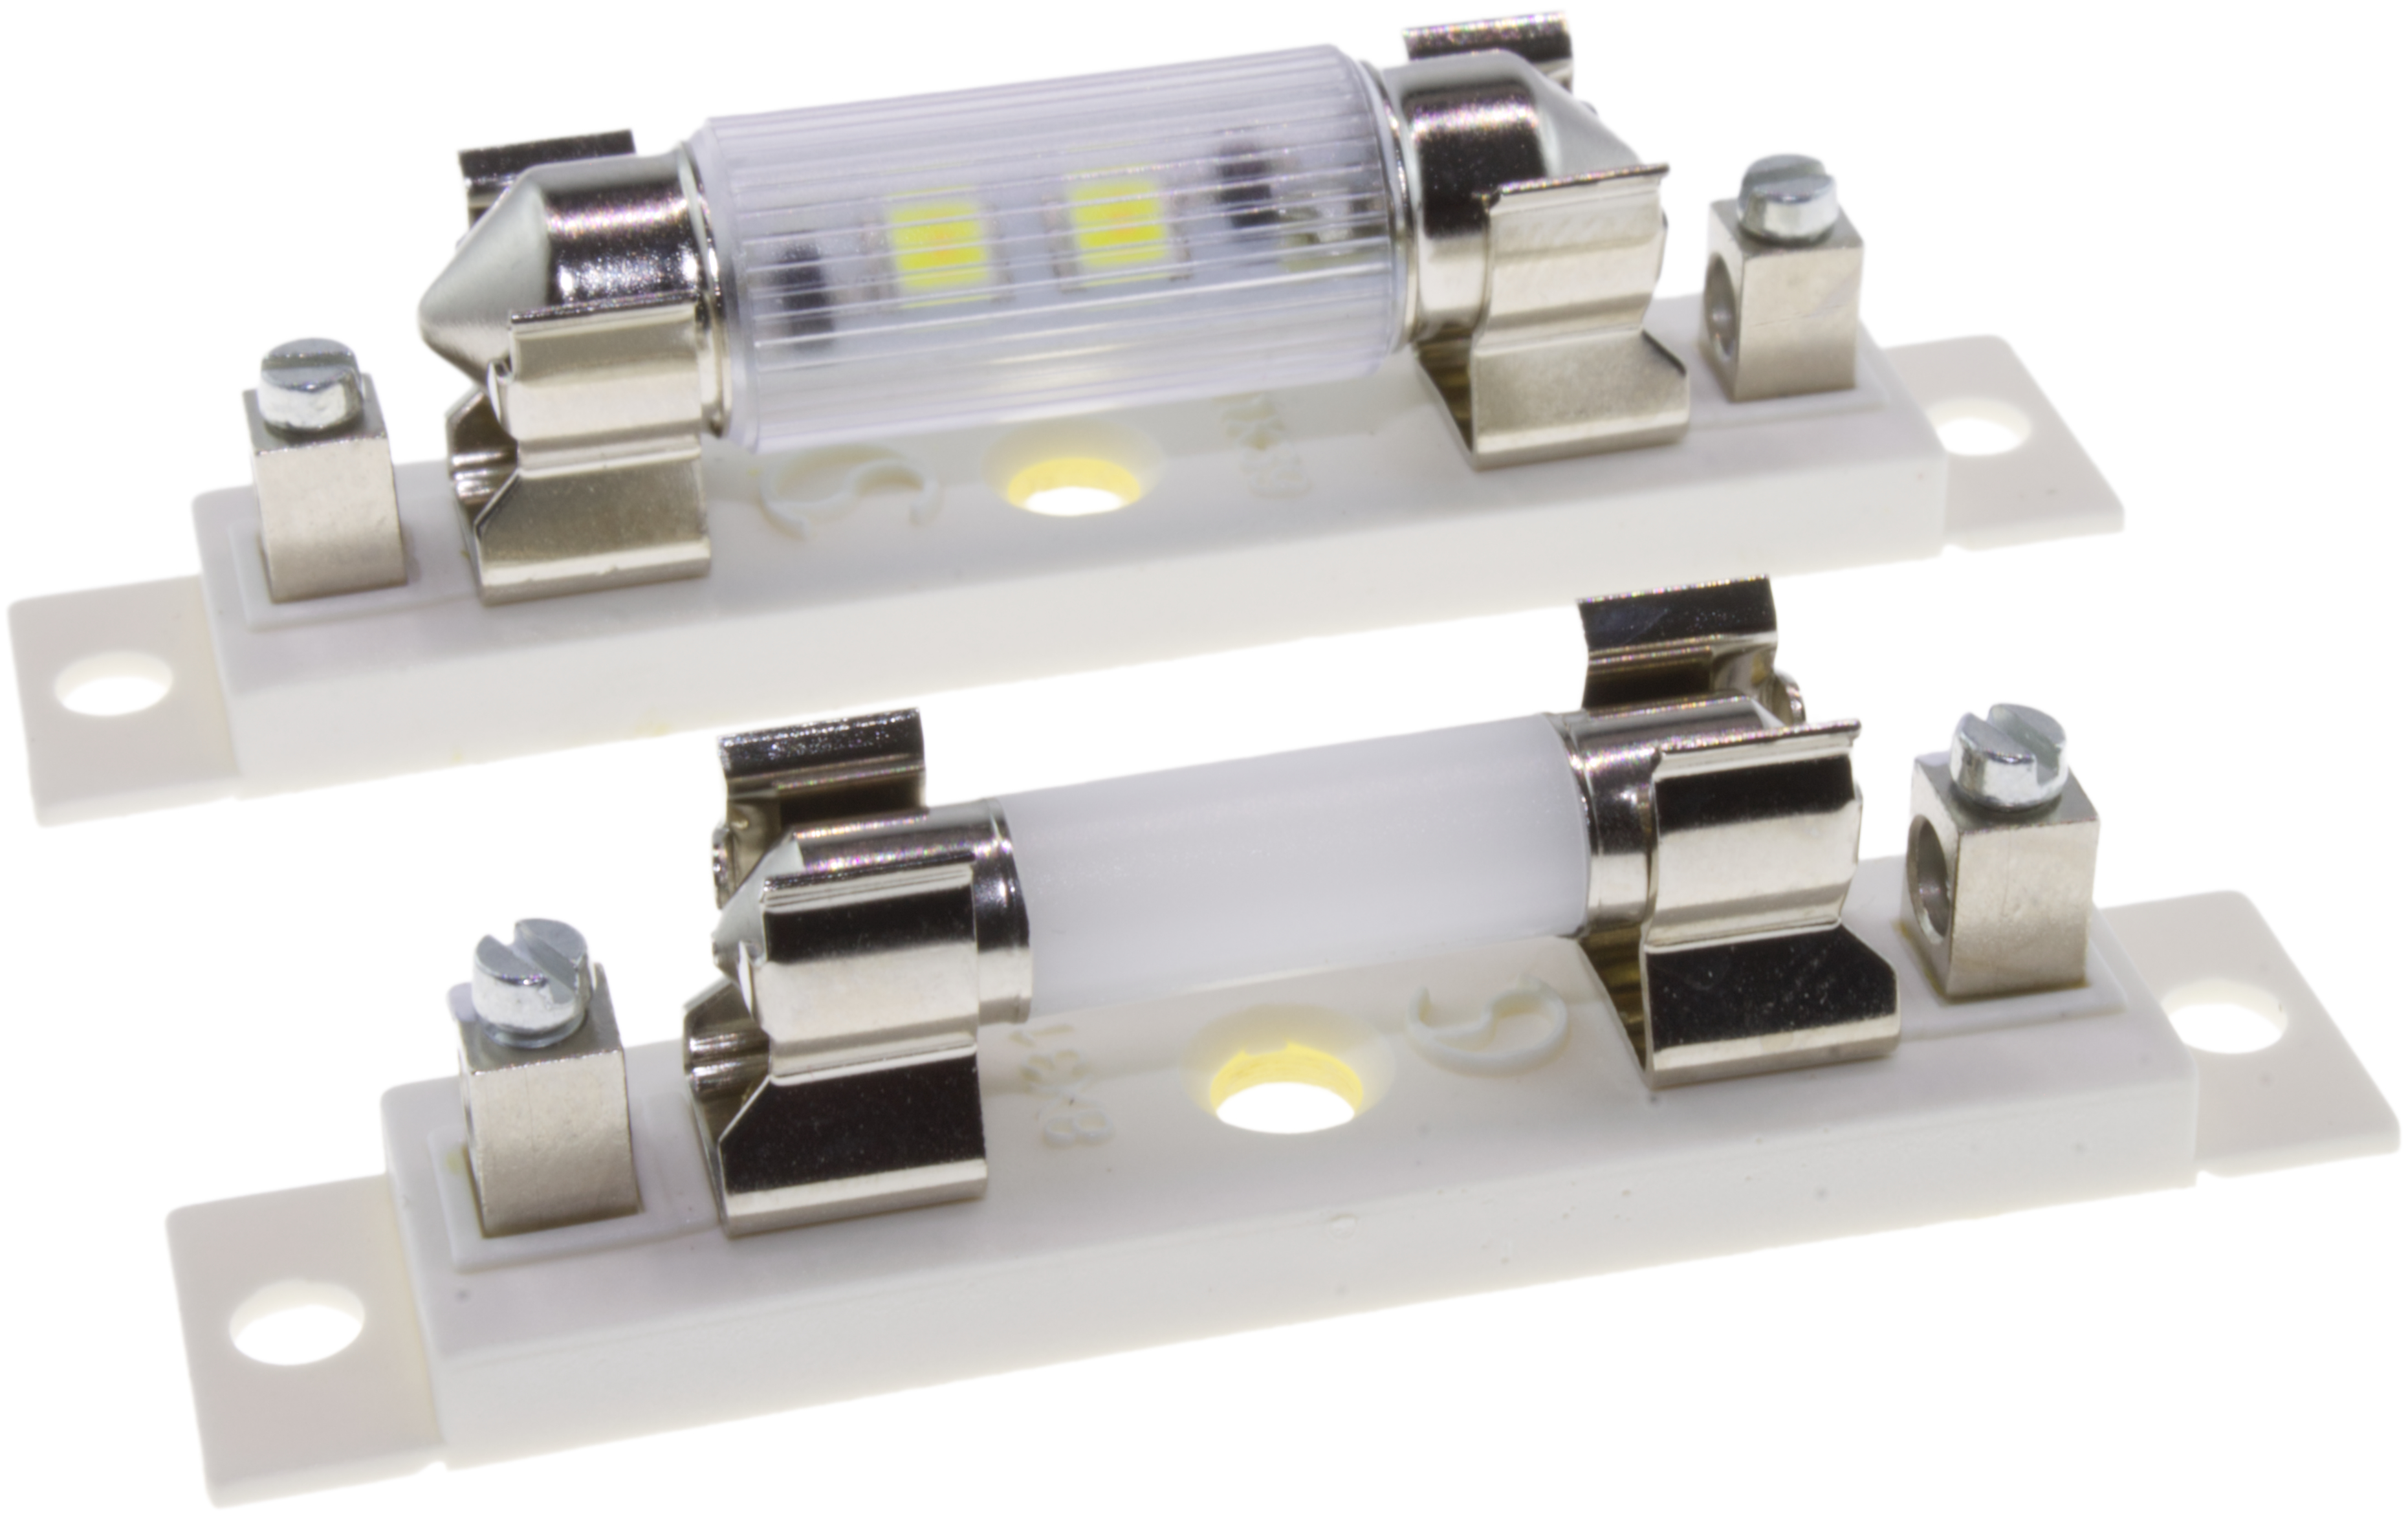 LED Soffitten: Effiziente Beleuchtung für Gewerbe & Industrie